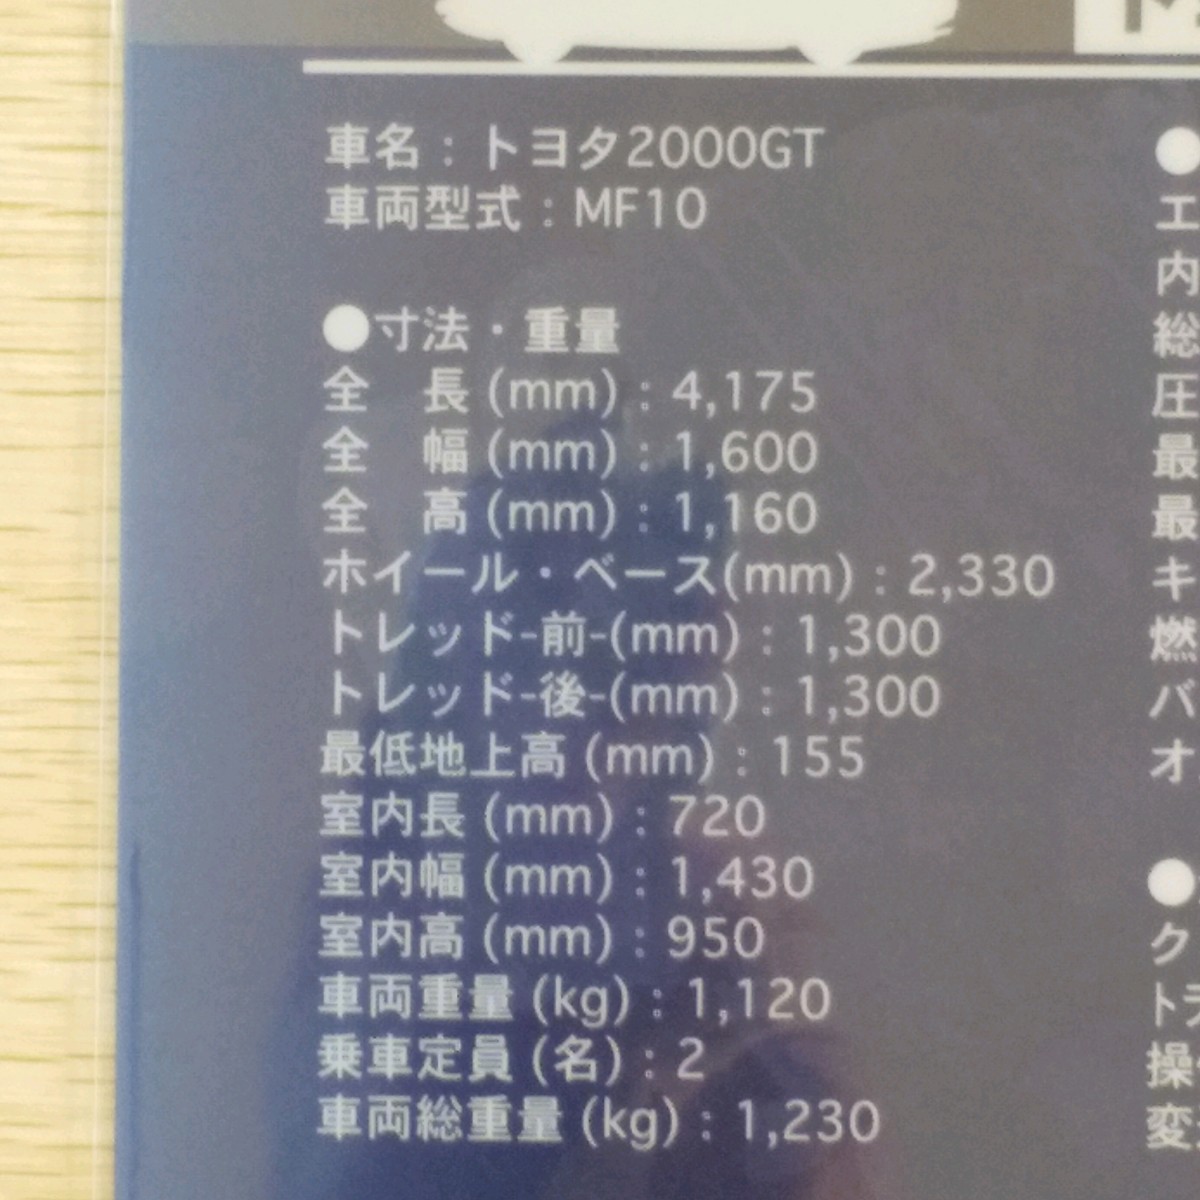 【送料無料】トヨタ博物館限定品 トヨタ2000GT A4クリアファイル(ブルー)